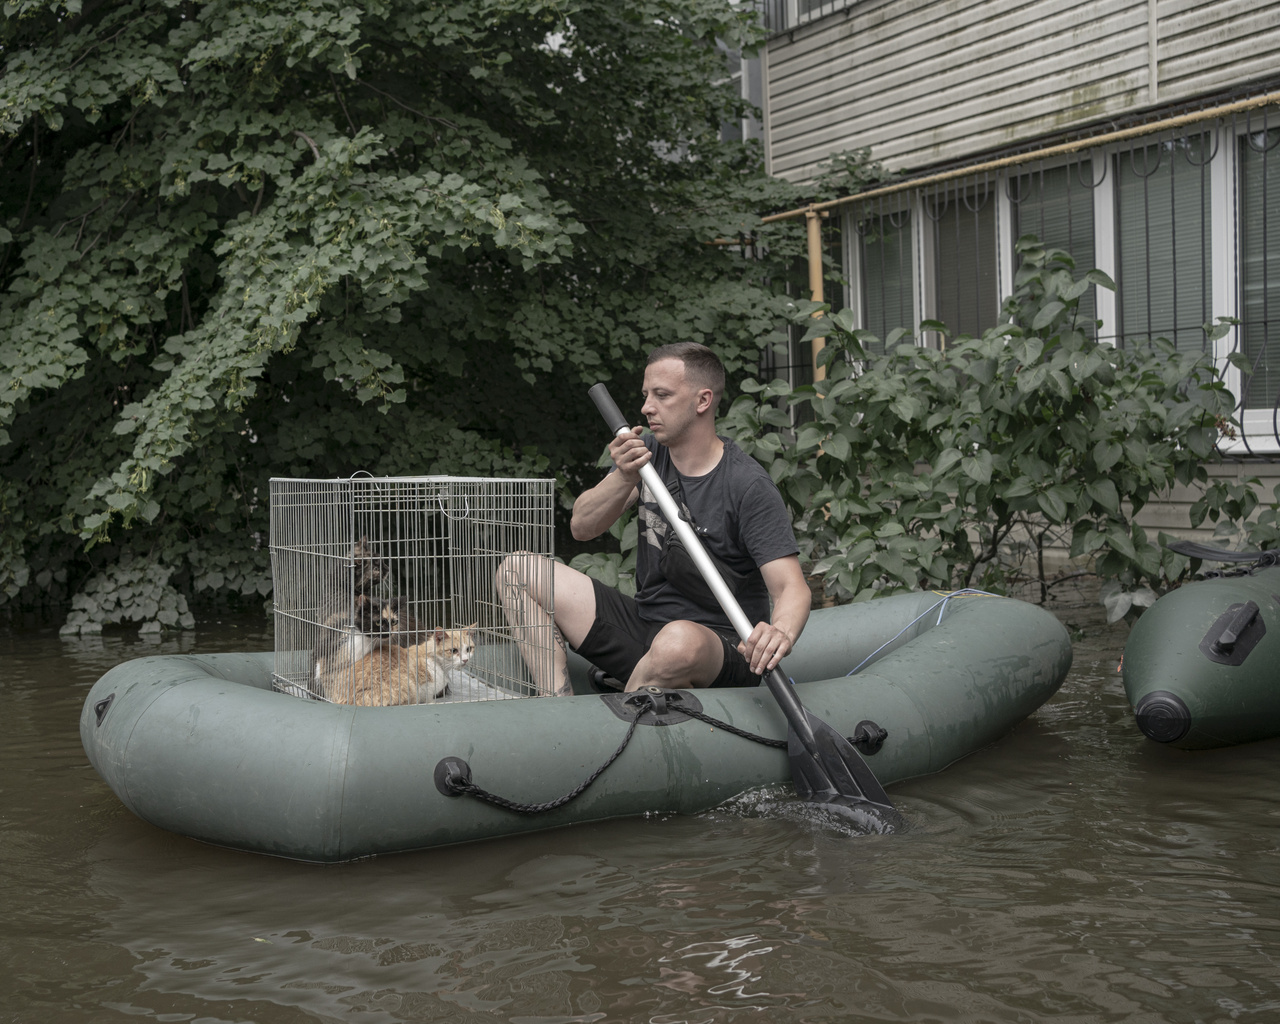 Kahovkai gát: Árvíz a háborúban (Fotósorozat - Európa)
                        Egy önkéntes macskákat ment az elárasztott kikötői negyedben. A kahovkai gát felrobbantása utáni árvíz 19 napon át tartott
                        